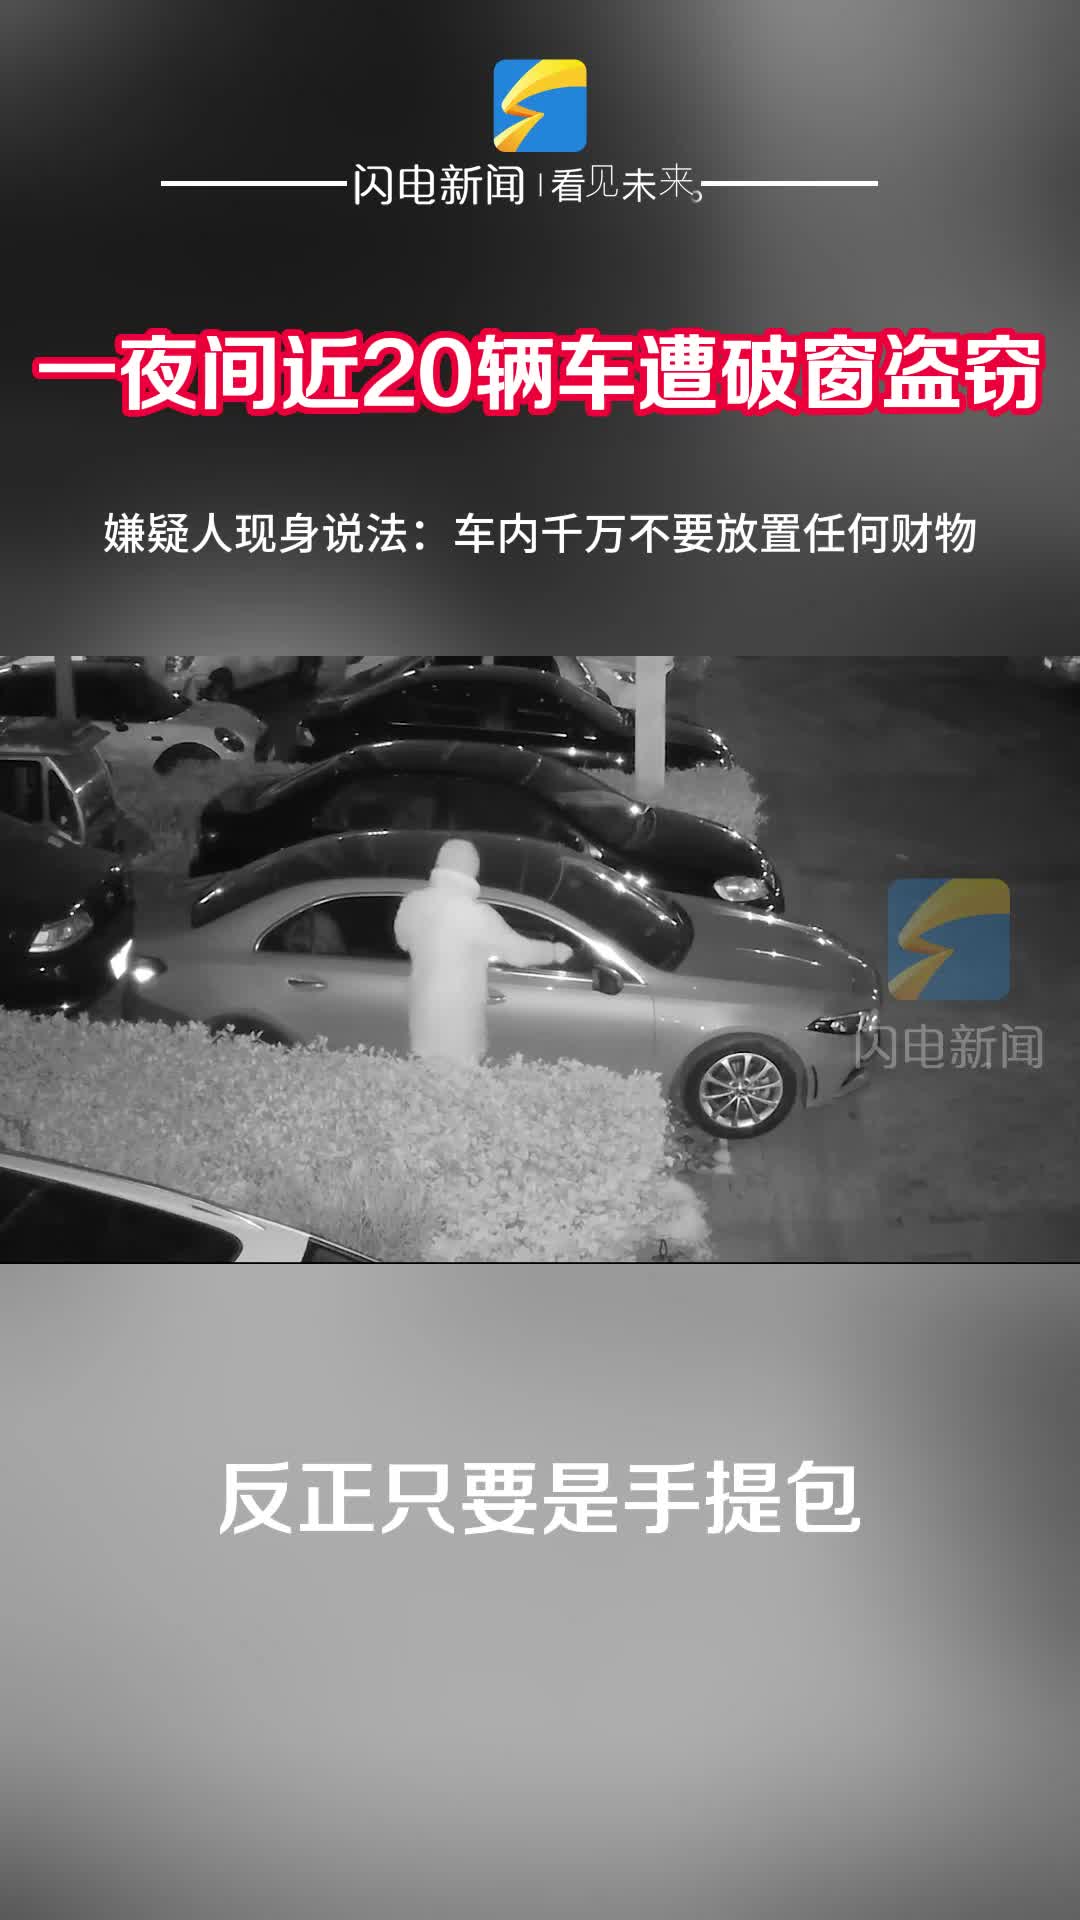 临沂：凌晨20余辆车遭破窗盗窃 警方提醒车内不要放置值钱物品